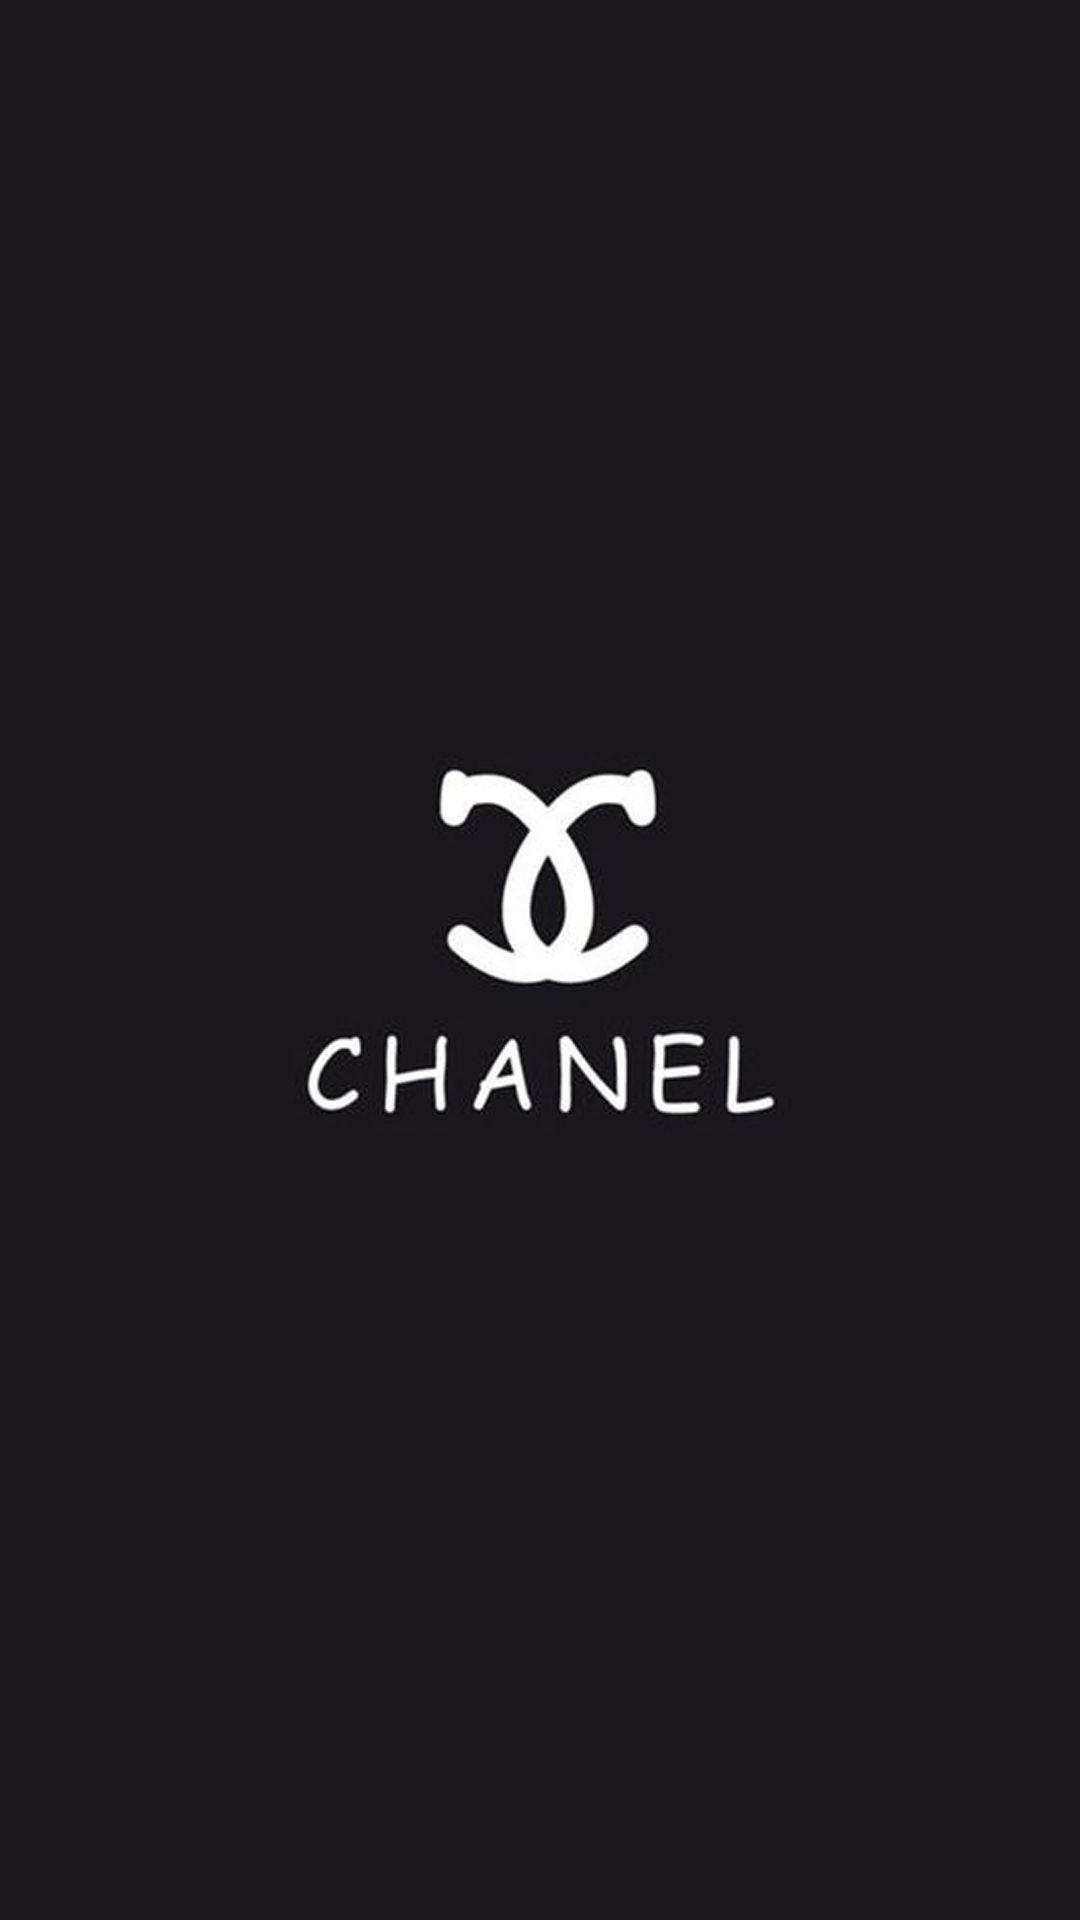 Hình nền Chanel 1080x1920 cho iPhone